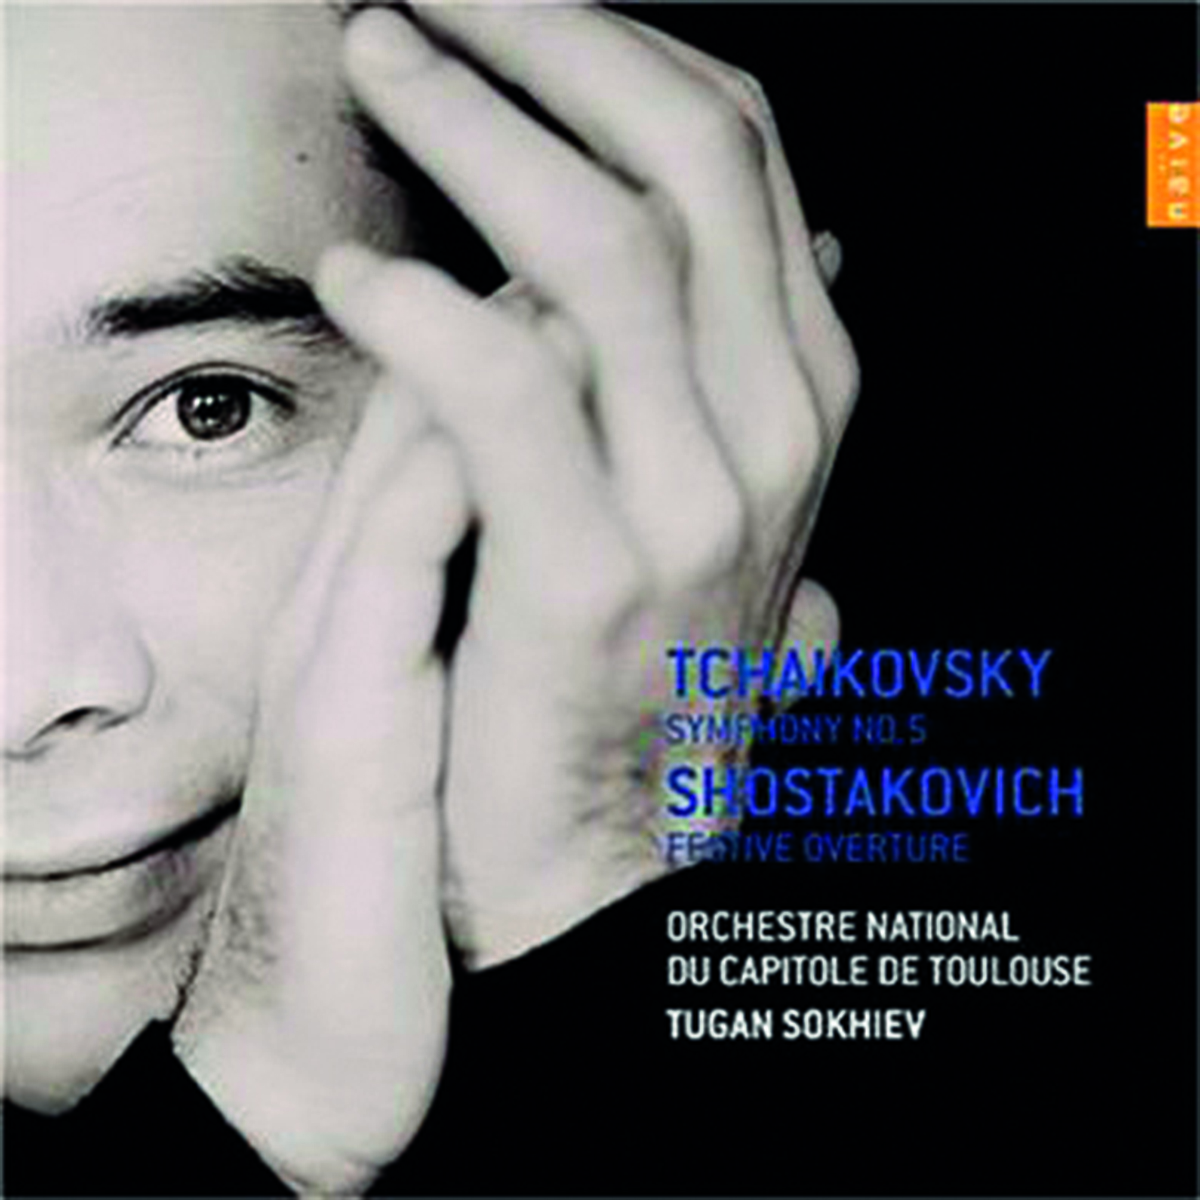 Symphonie n°5 Chostakovitch